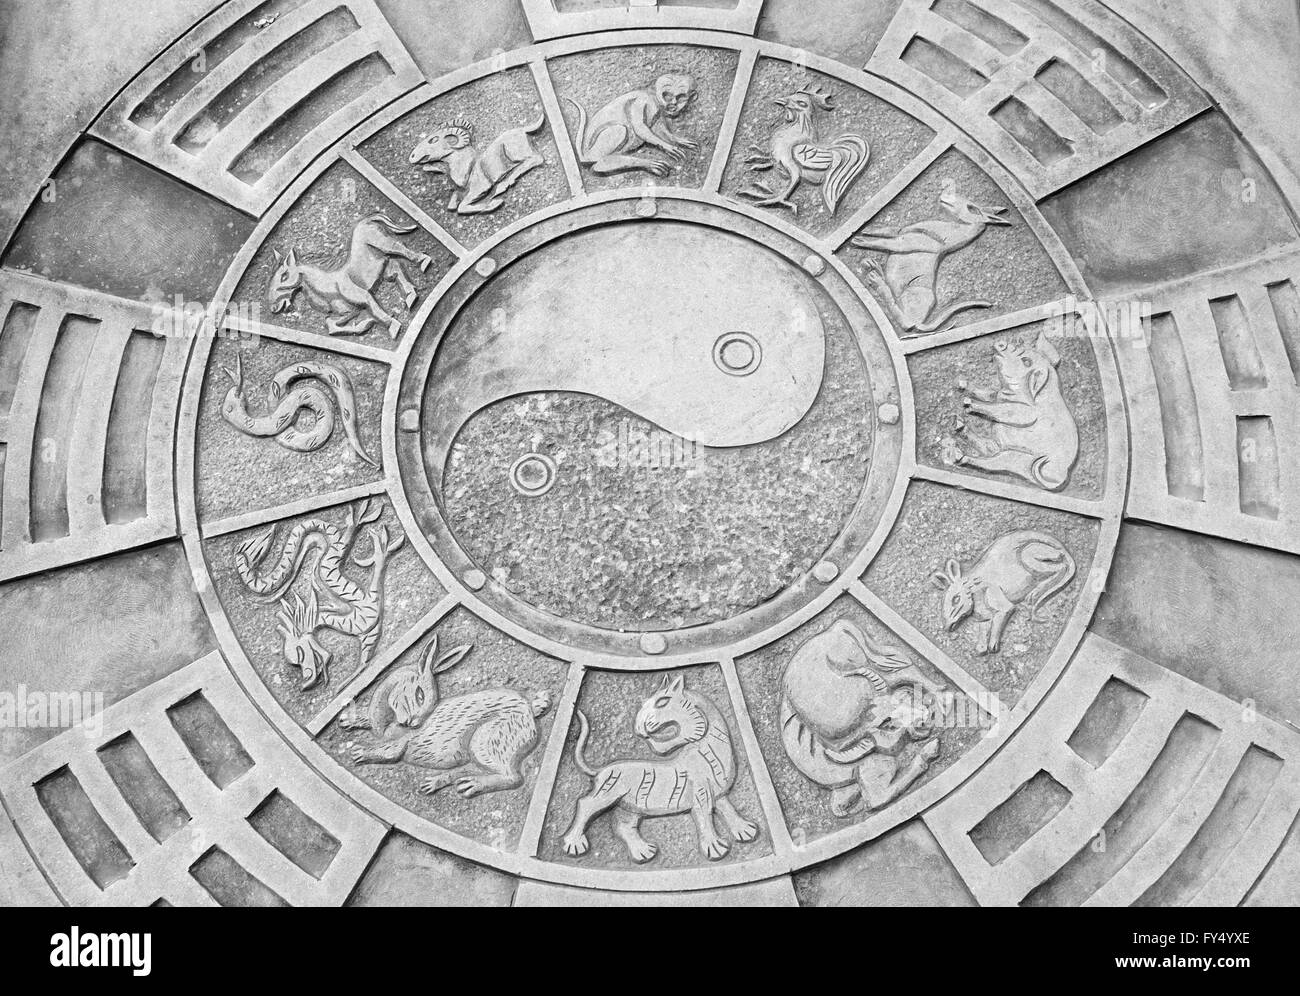 Un symbole yin et yang entouré par le zodiaque chinois photos sur une pierre dans le sol dans la ville de Shanghai Chine 1051 Cidu. Banque D'Images